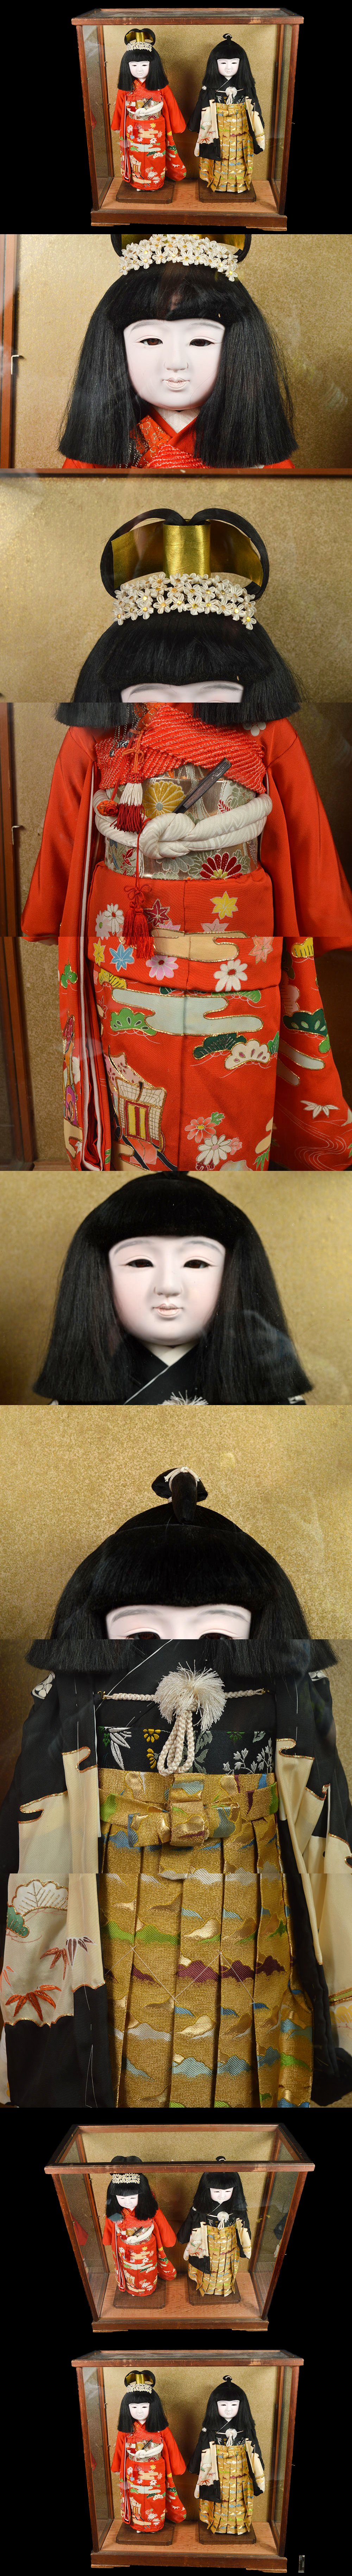 【セール新作】某収集家買取品 名品 男の子 女の子 市松人形 一対 ガラスケース付 古美術品(日本人形旧家蔵出)A902 JTD8w8nn 市松人形